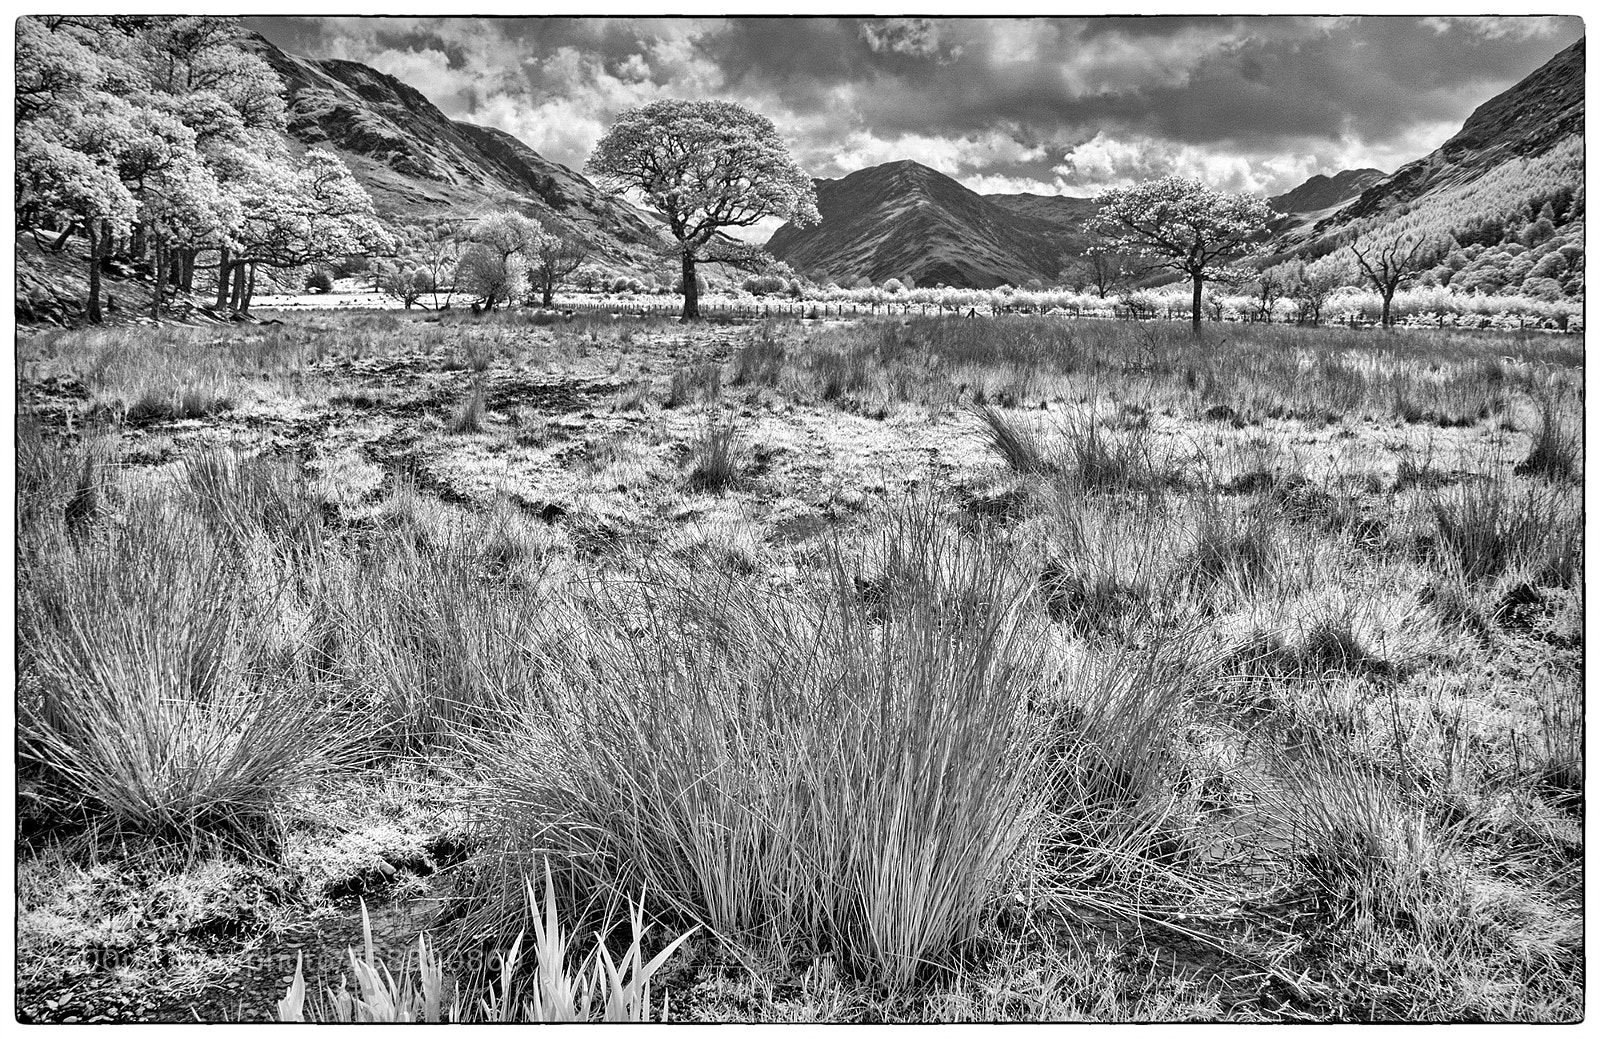 Sony Alpha DSLR-A100 sample photo. Lake district landscape photography